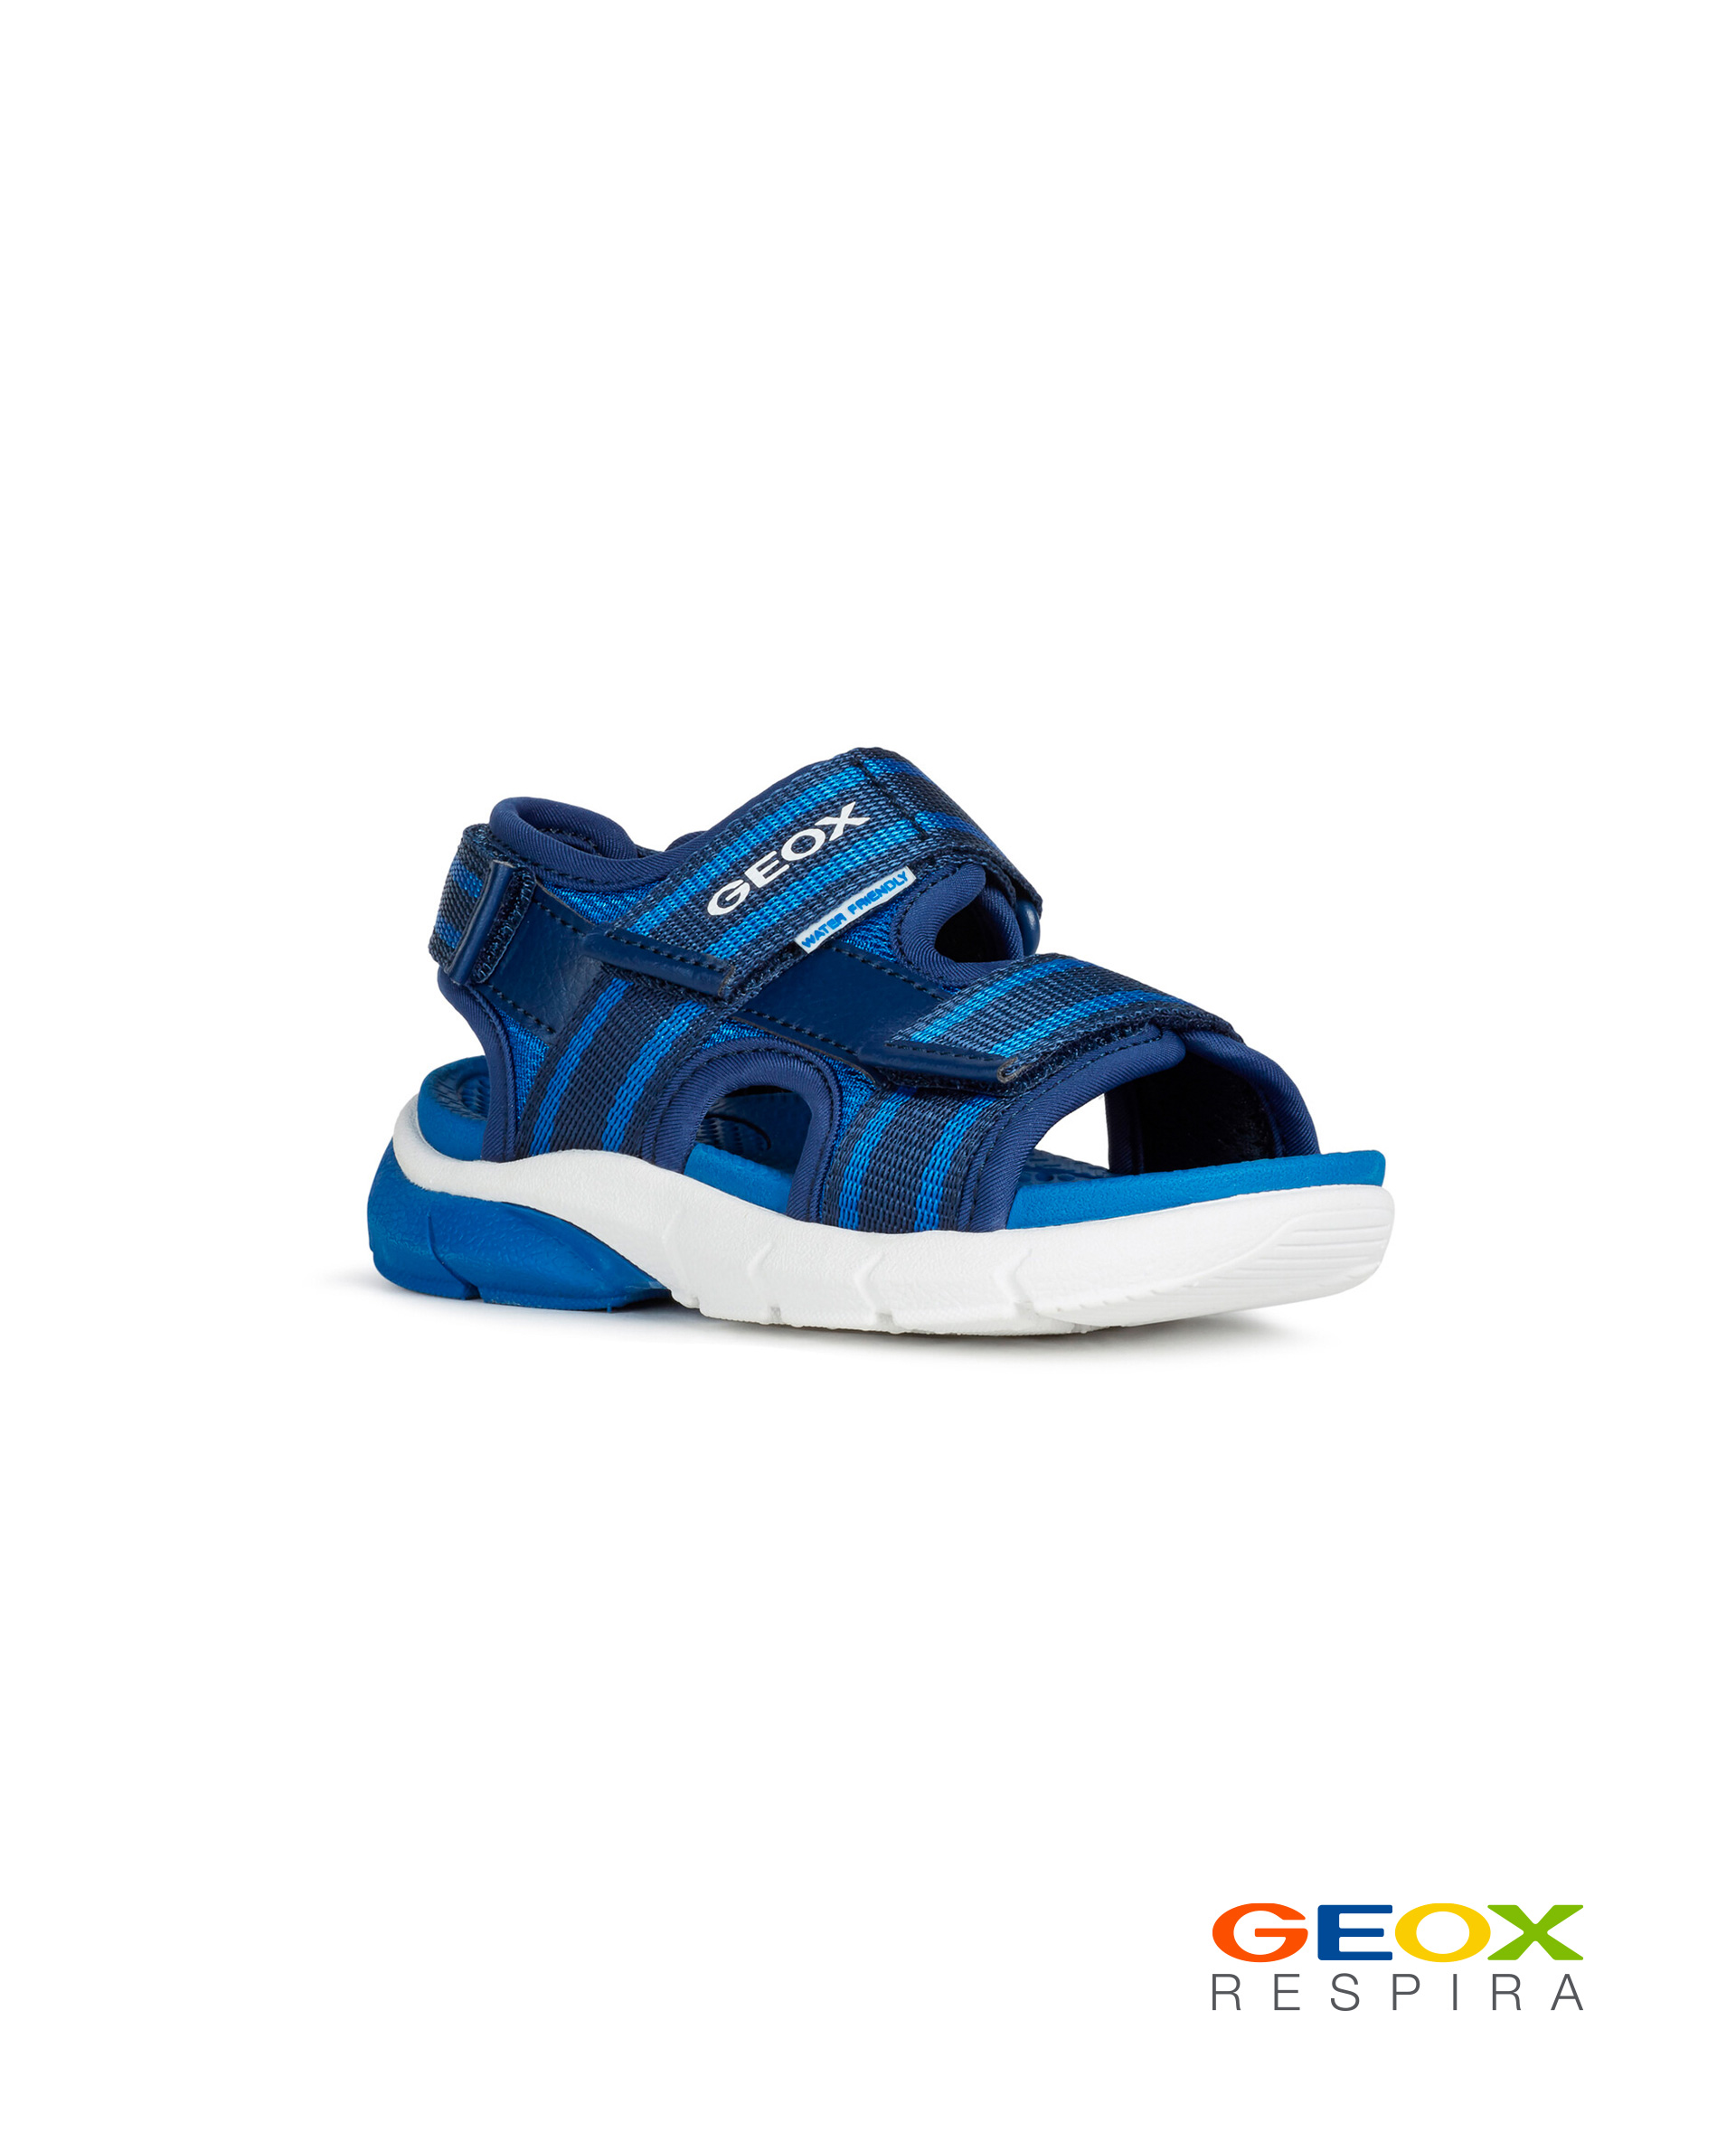 Синие сандалии Geox для мальчика J929DB01114C0615, размер 27, цвет синий - фото 1